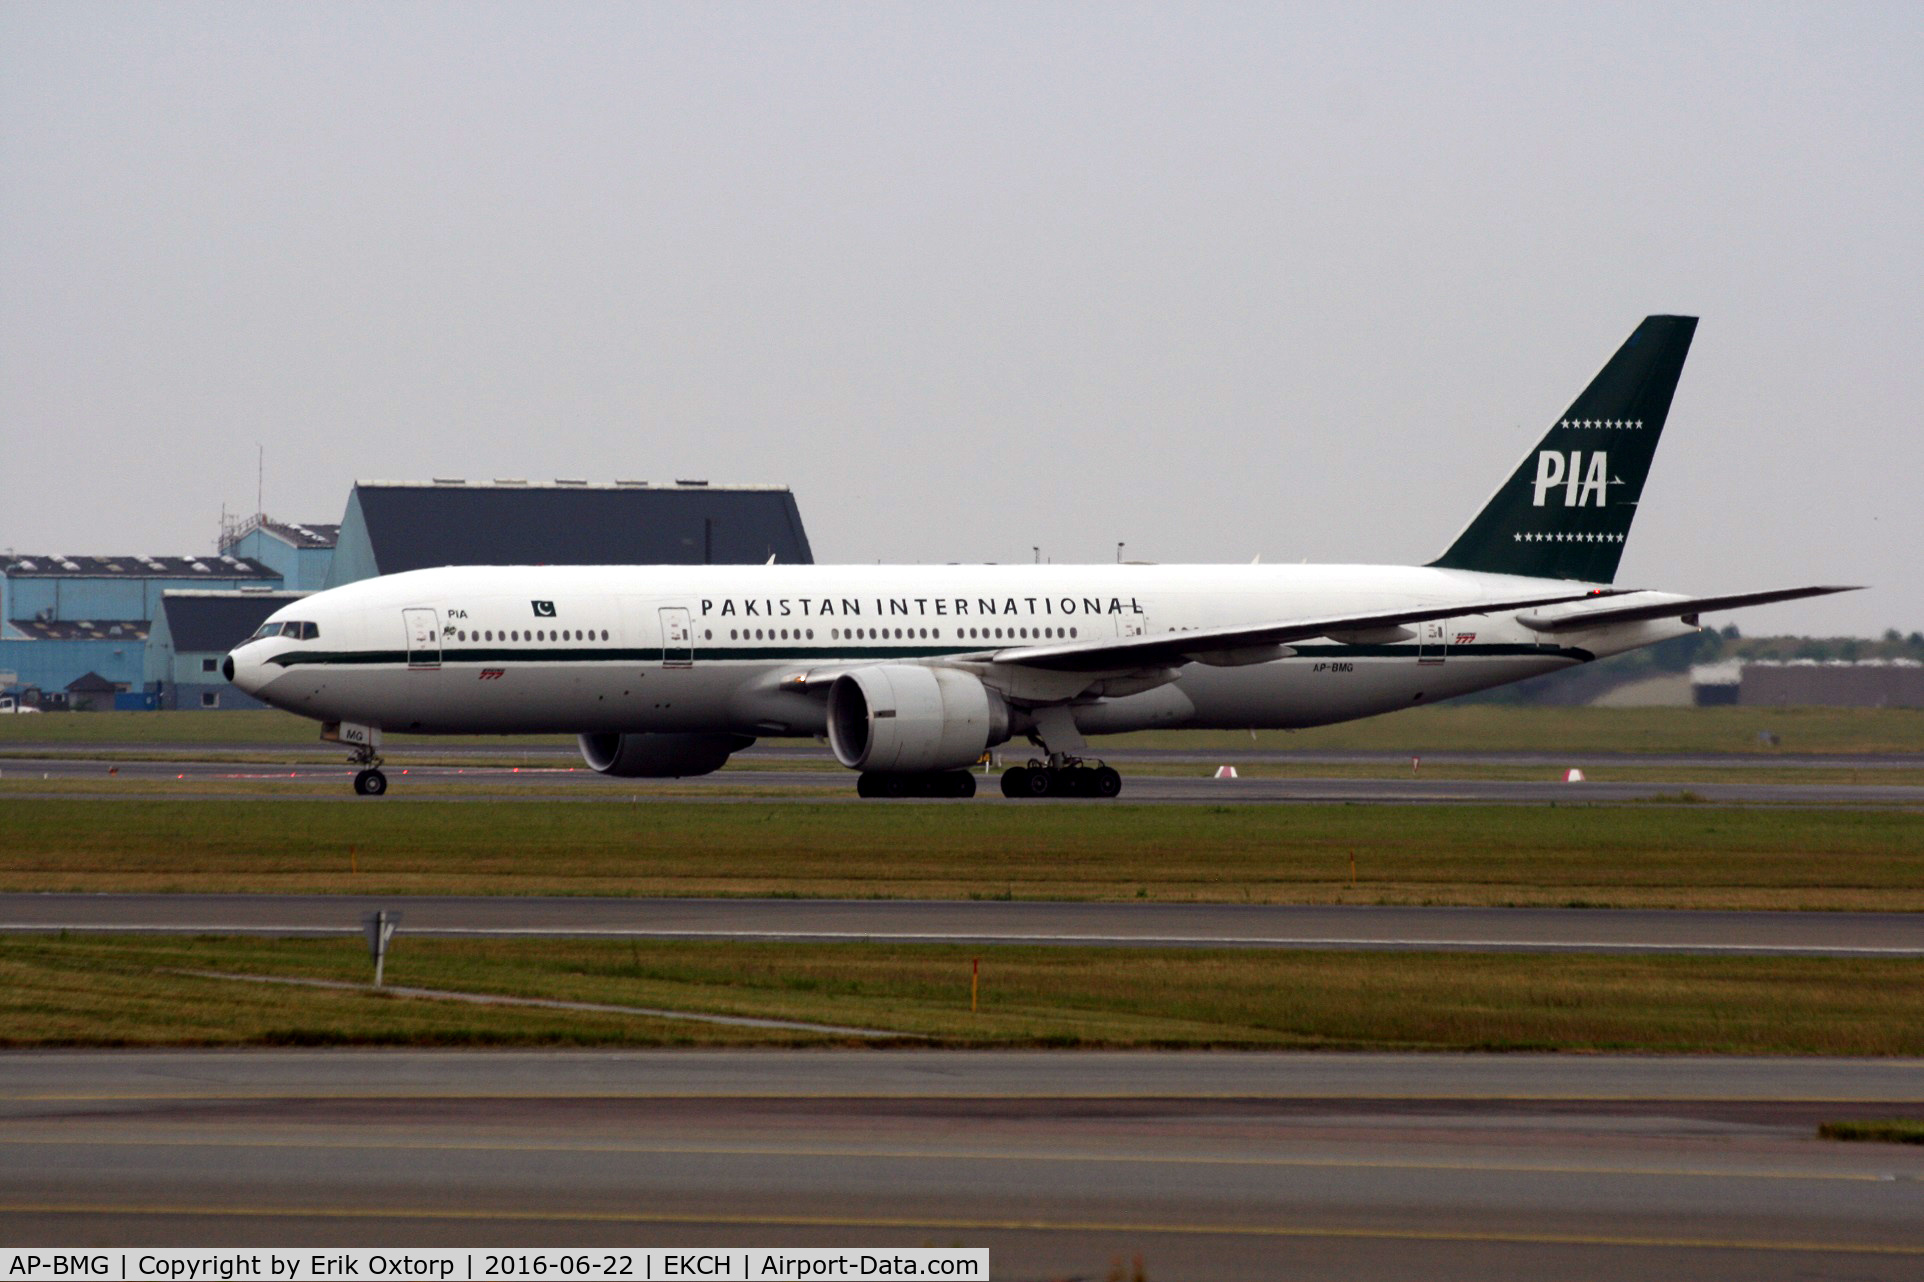 AP-BMG, 2005 Boeing 777-2Q8/ER C/N 32716, AP-BMG in PIA retro c/s.
Just landed rw 22L